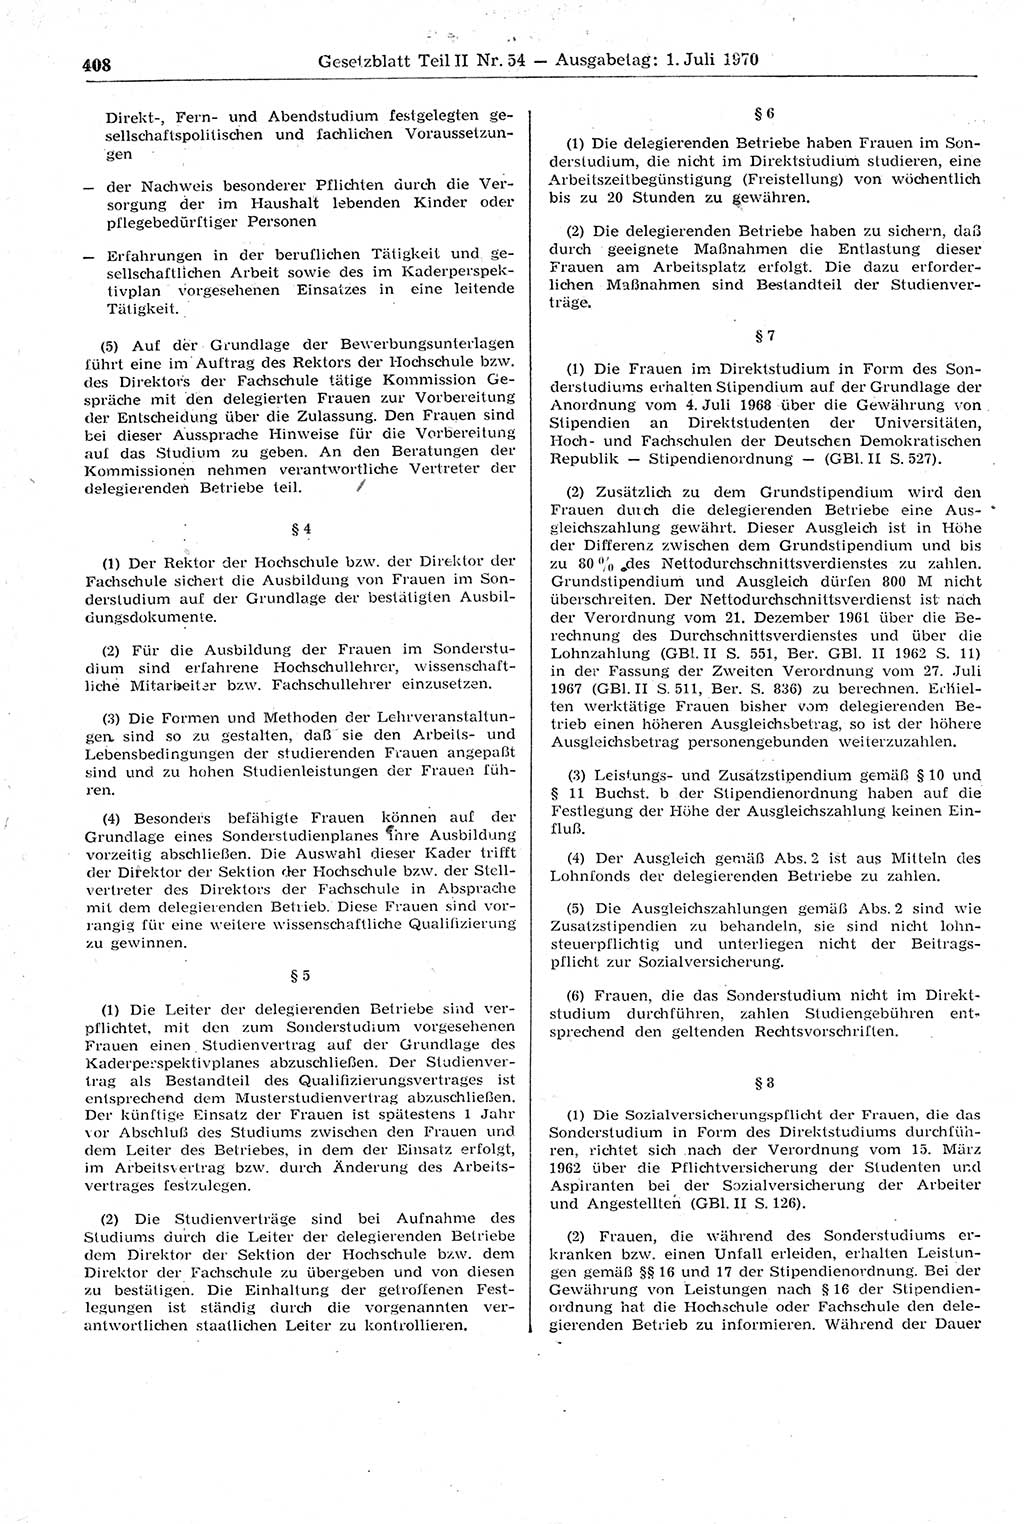 Gesetzblatt (GBl.) der Deutschen Demokratischen Republik (DDR) Teil ⅠⅠ 1970, Seite 408 (GBl. DDR ⅠⅠ 1970, S. 408)